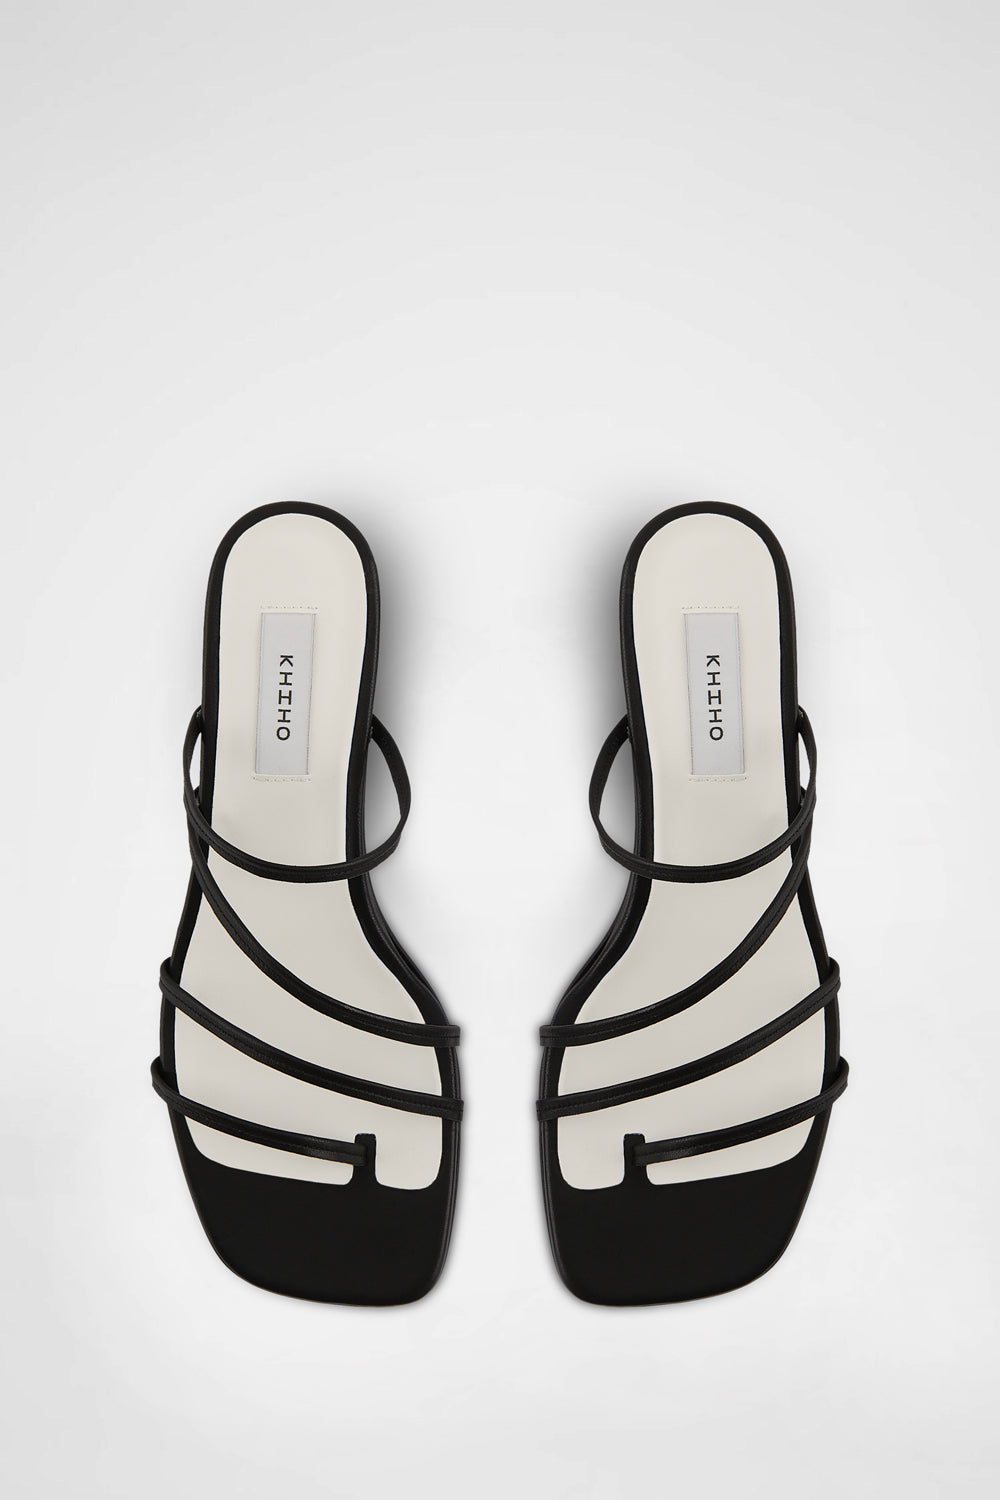 Cabu Sandals In Black